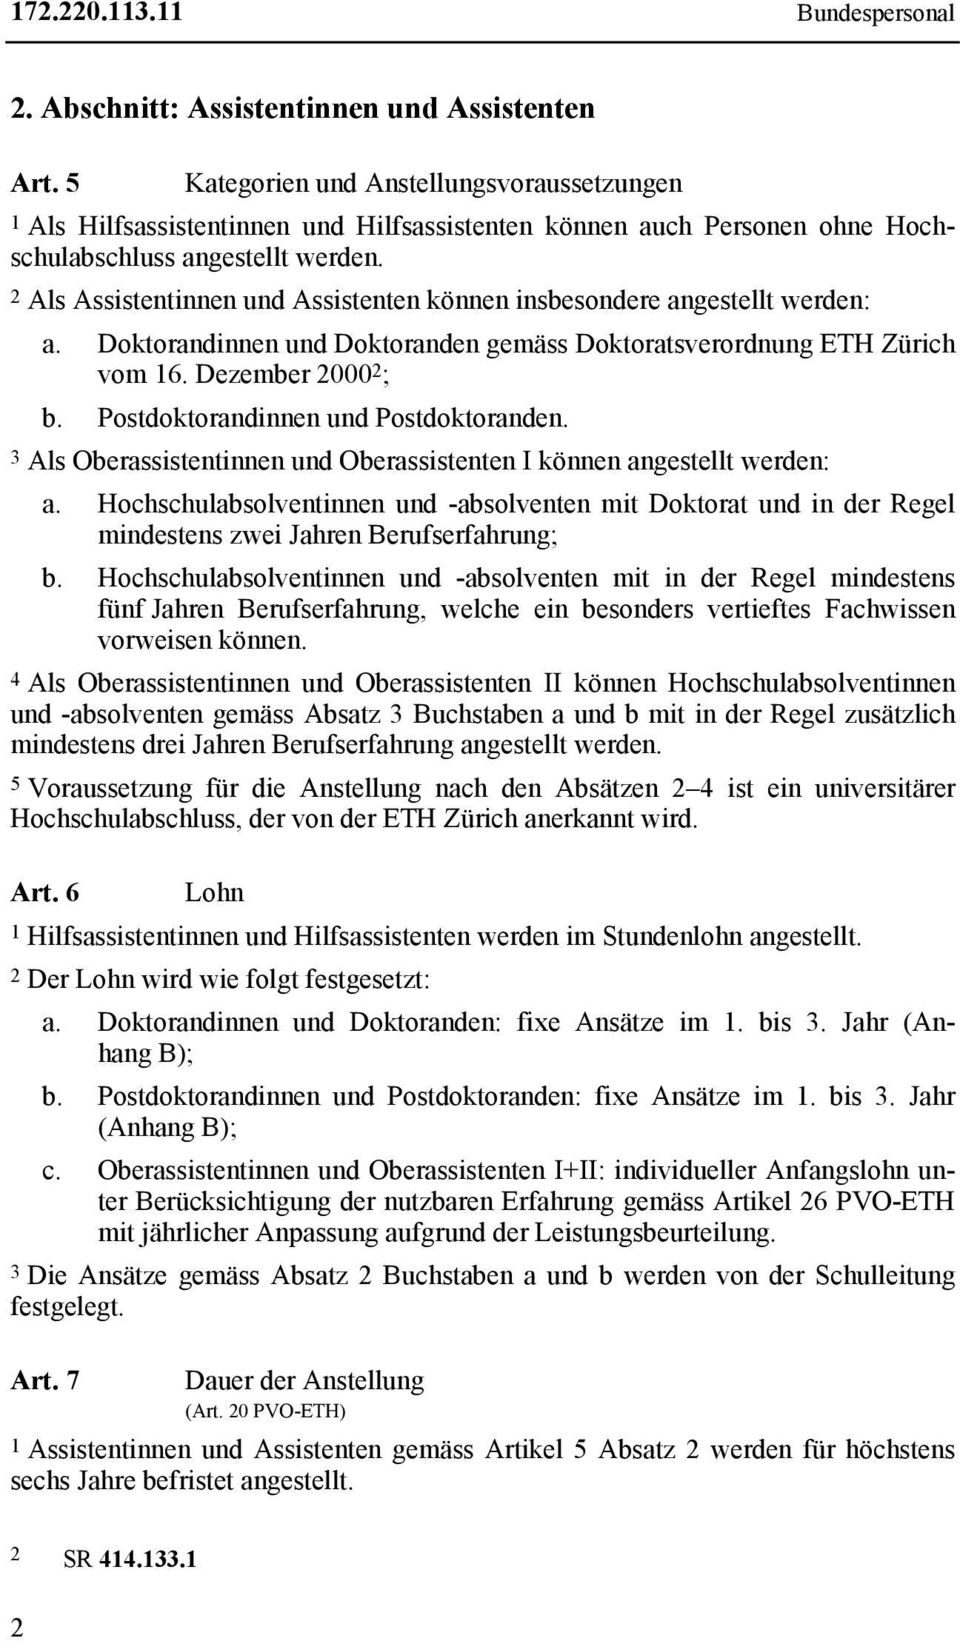 2 Als Assistentinnen und Assistenten können insbesondere angestellt werden: a. Doktorandinnen und Doktoranden gemäss Doktoratsverordnung ETH Zürich vom 16. Dezember 2000 2 ; b.